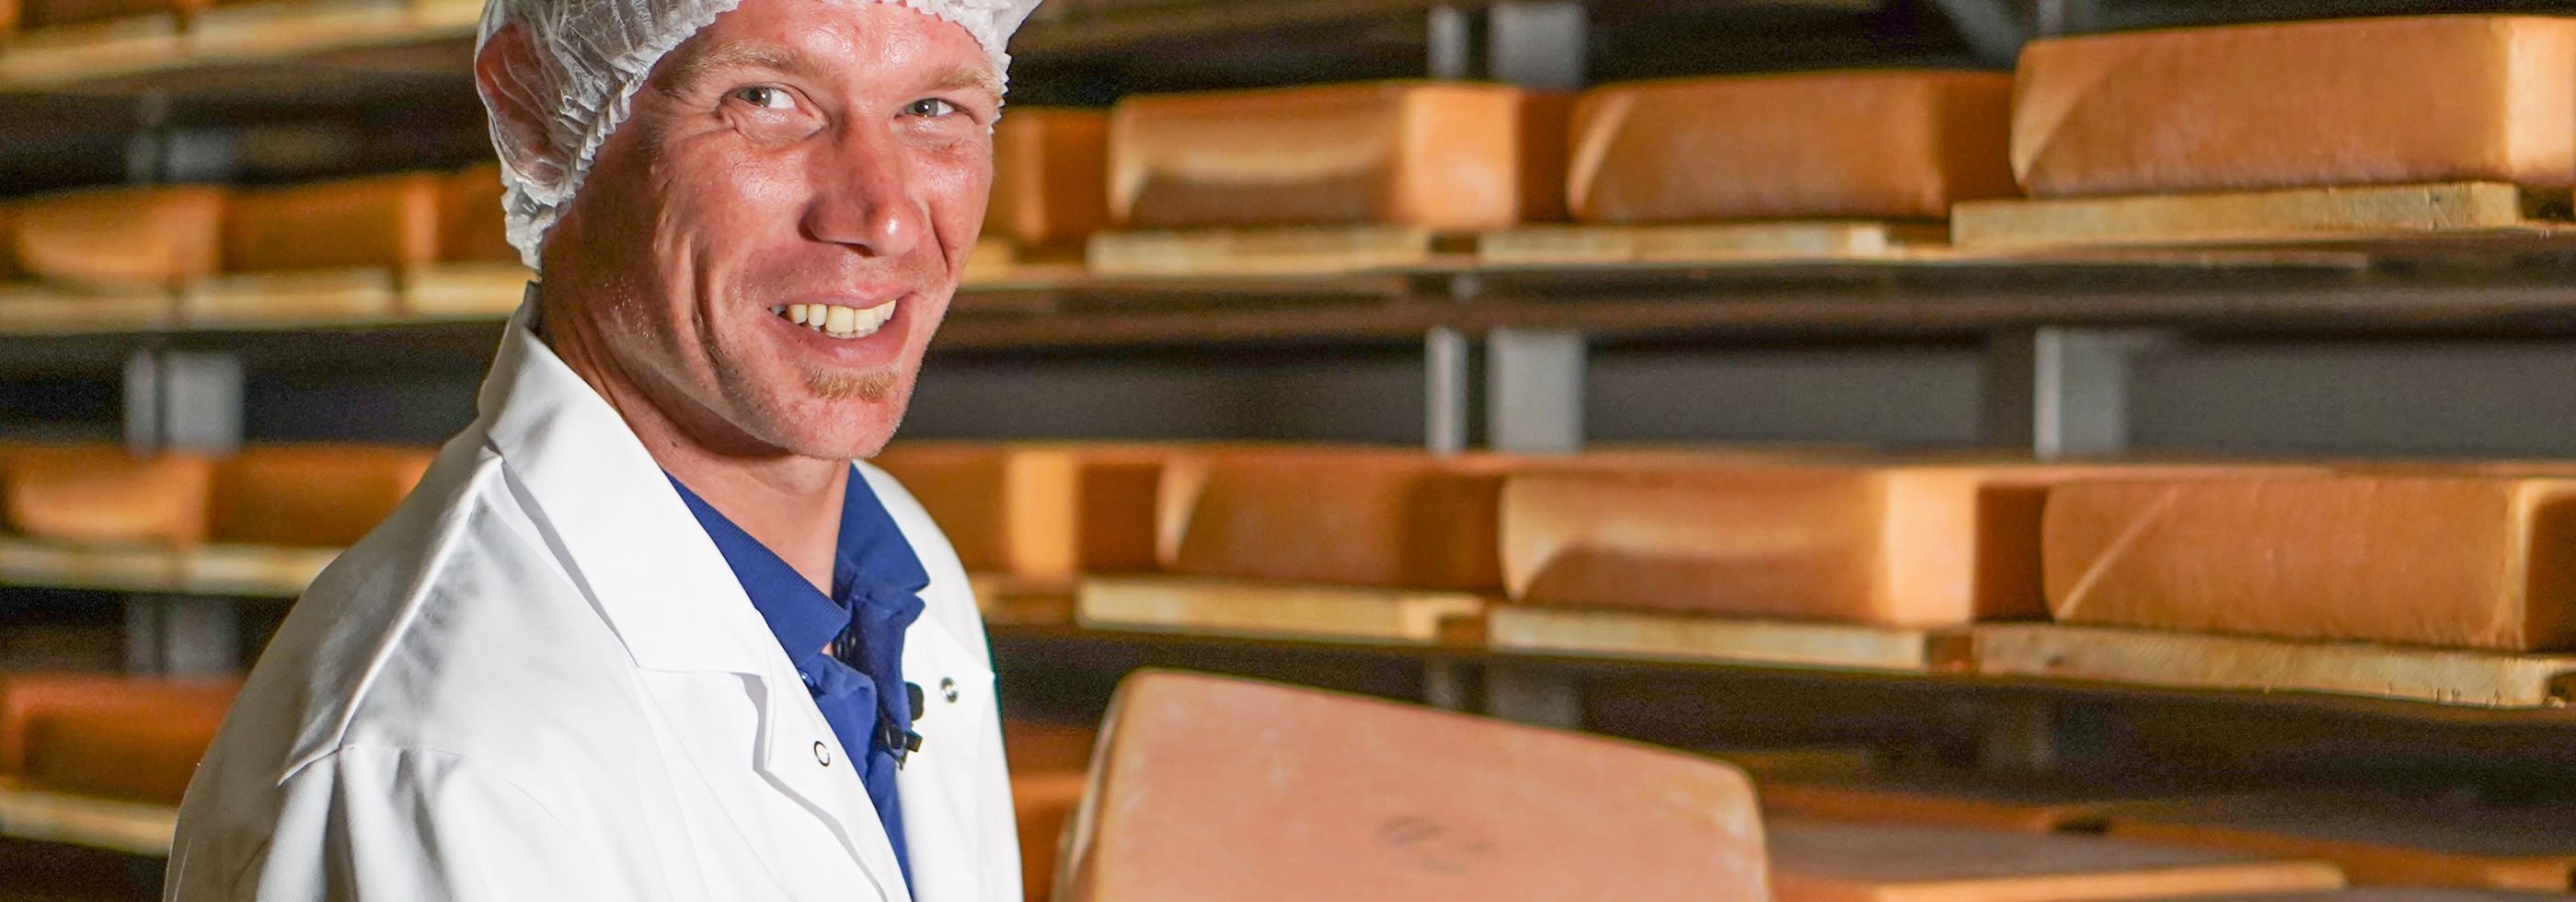 Fabian Spielhofer, Geschäftsführer und Käsemeister der Brülisauer Käse AG